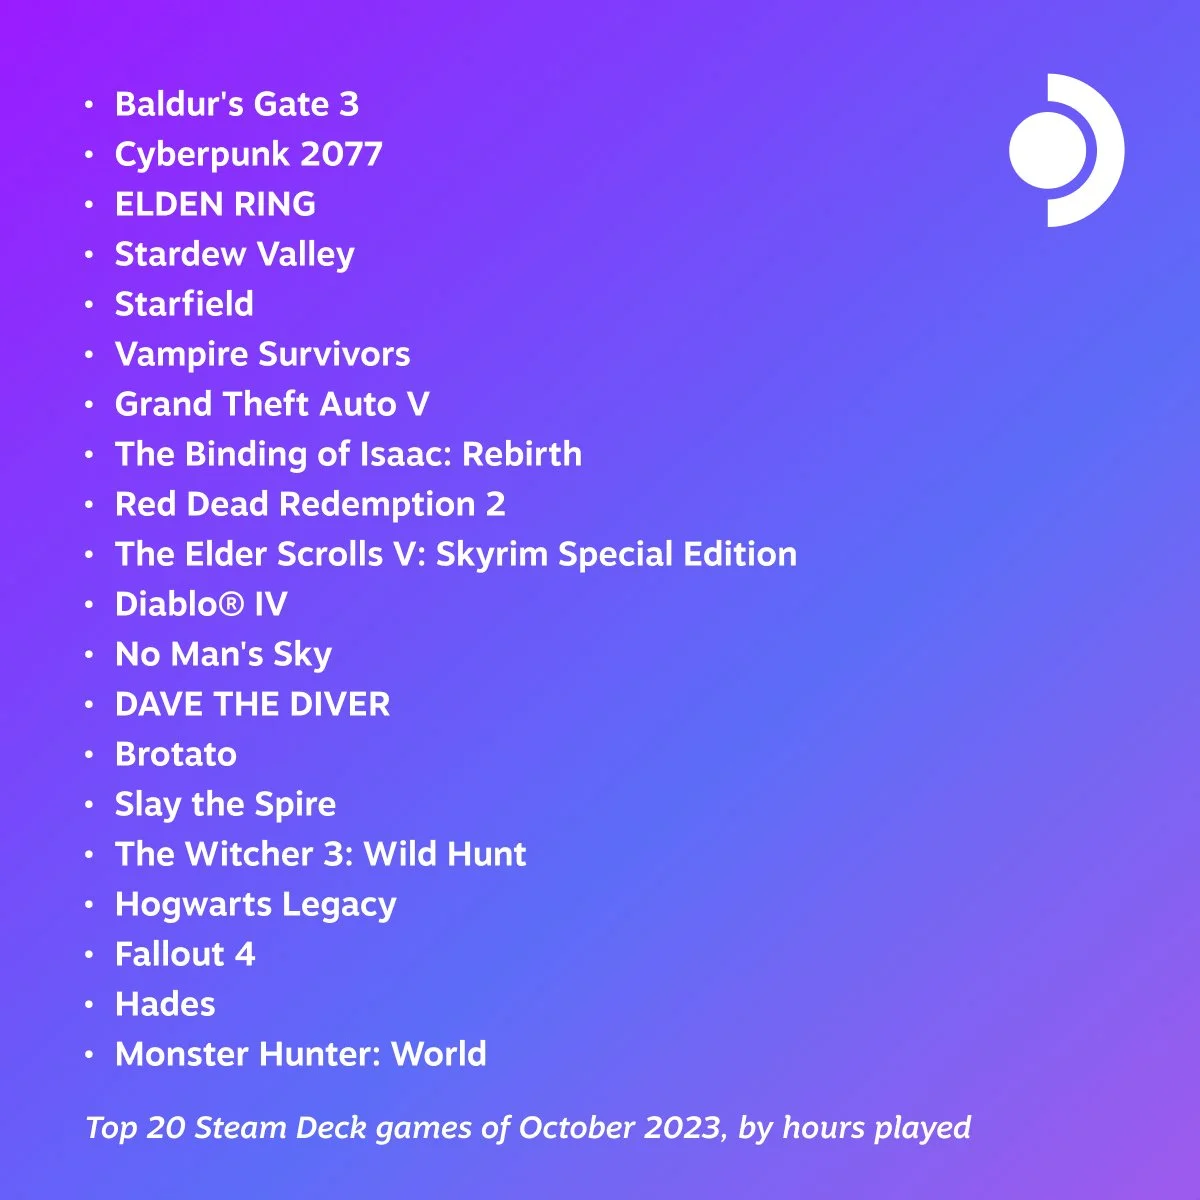 Baldurs Gate 3 обошла Cyberpunk 2077 в топе игр на Steam Deck за октябрь - фото 1